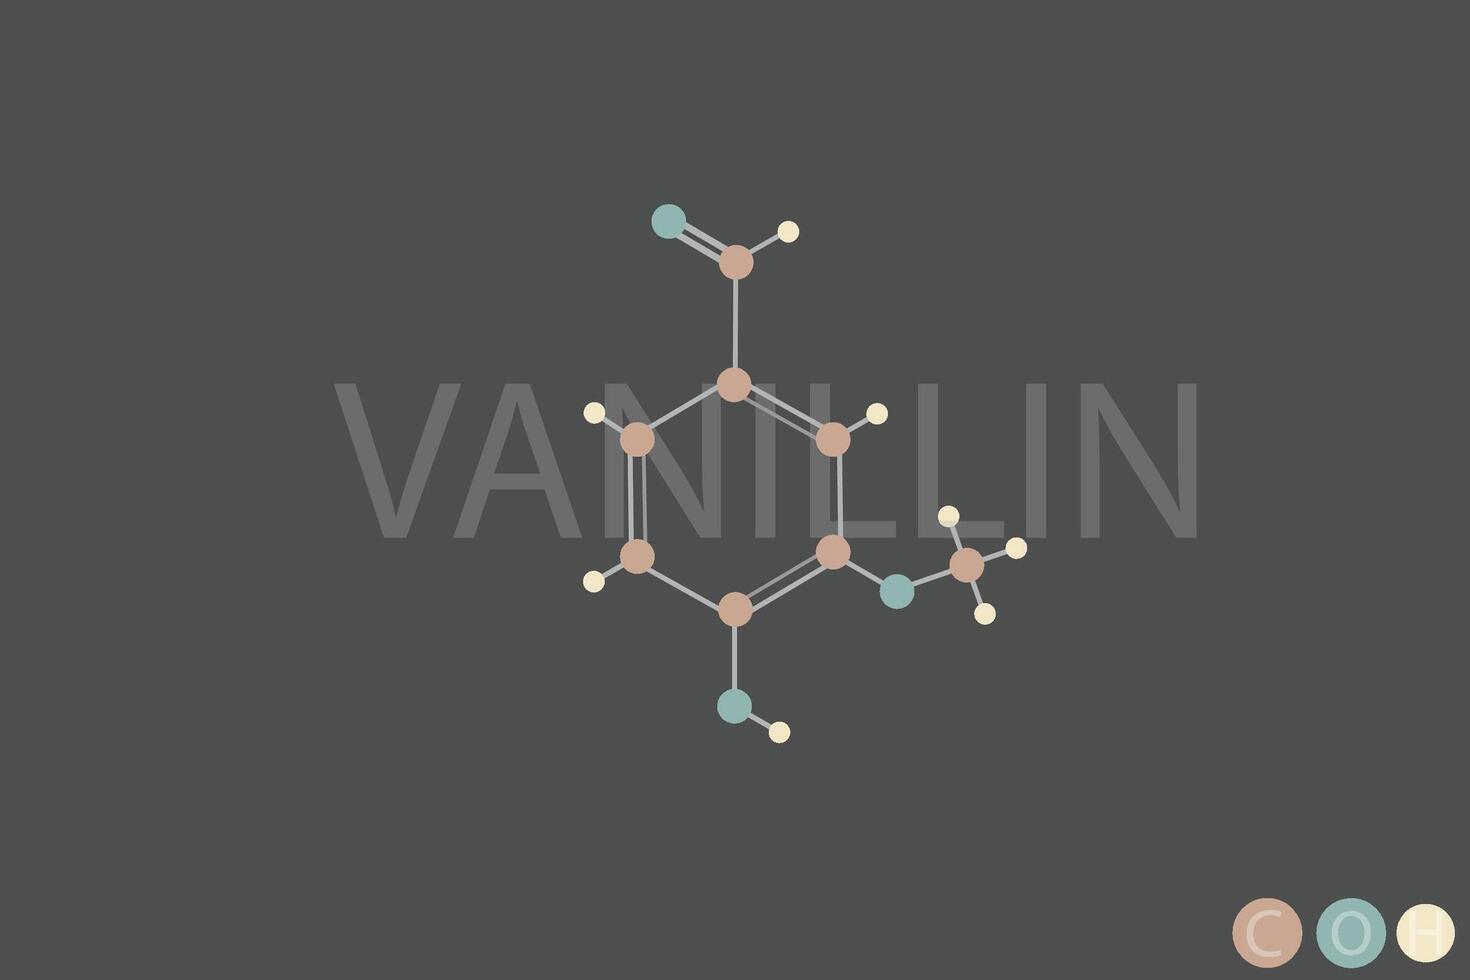 Vanillin molekular Skelett- chemisch Formel vektor